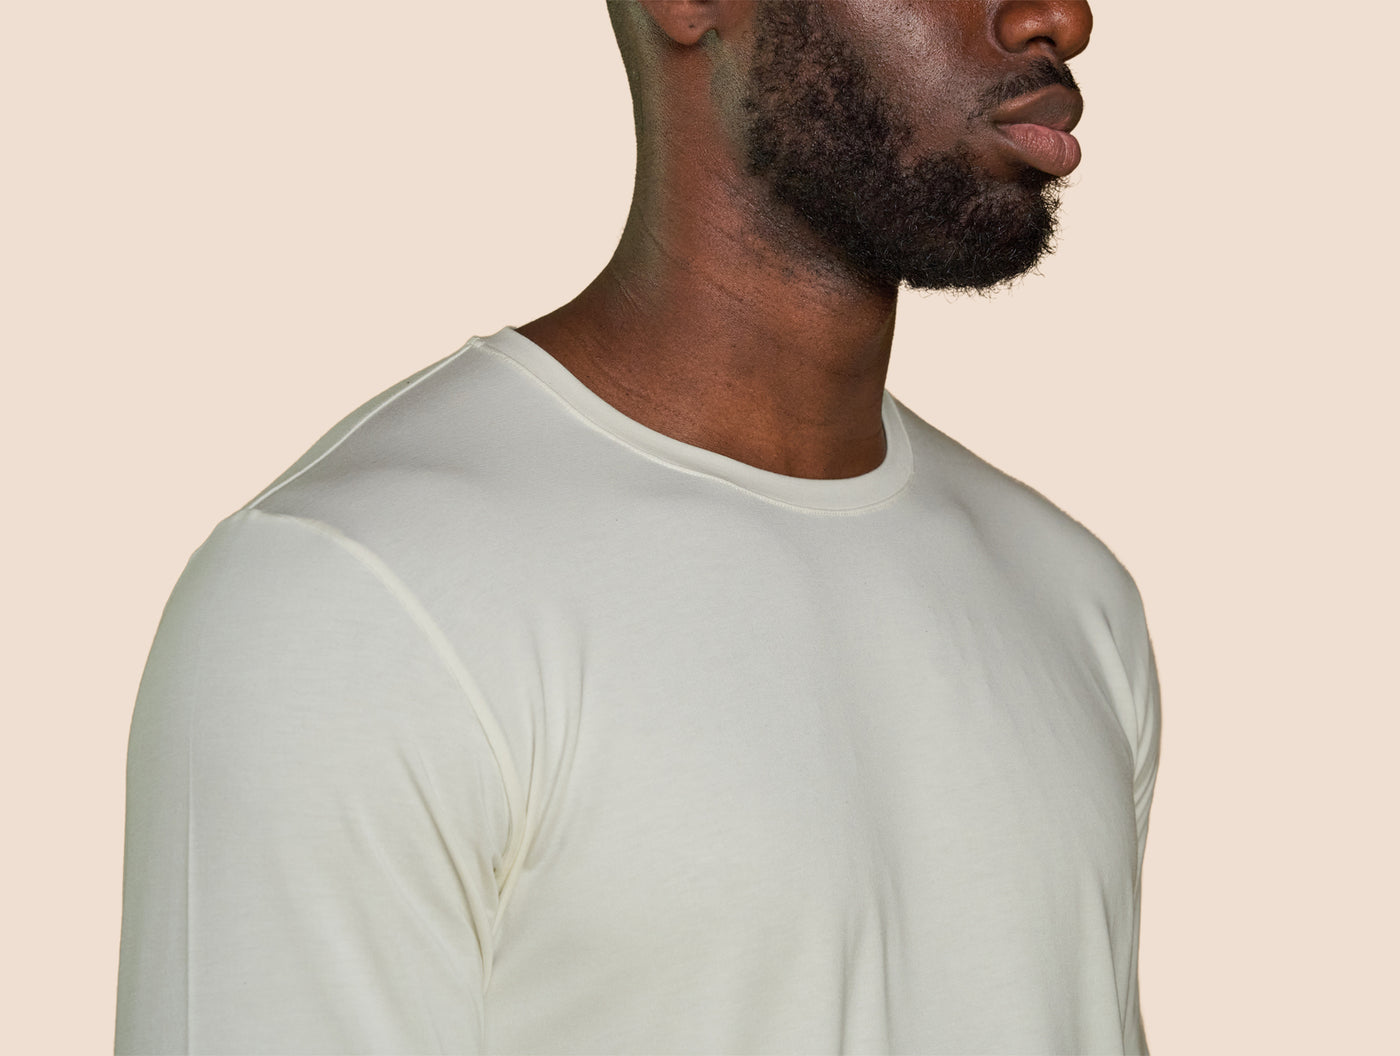 Pétrone T-shirt manches longues coton pima micromodal blanc crème homme#couleur_blanc-crème